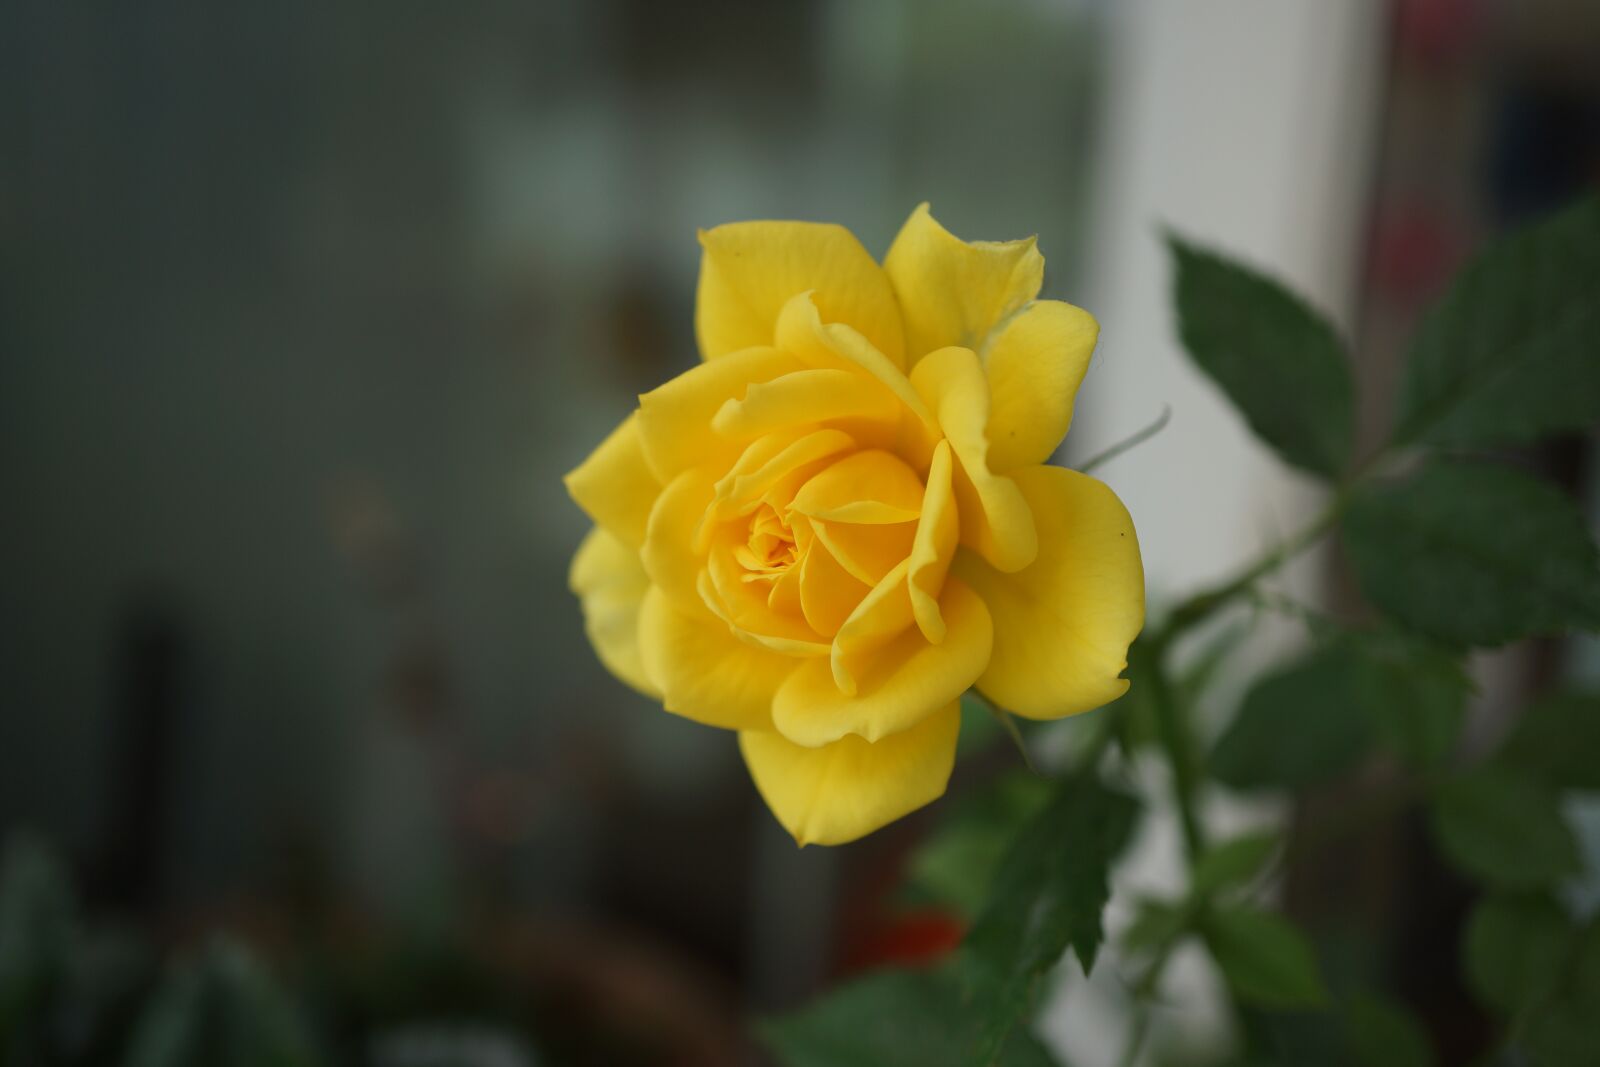 Sony Alpha NEX-7 + Sony E 30mm F3.5 Macro sample photo. Yellow, jasmine, plant photography